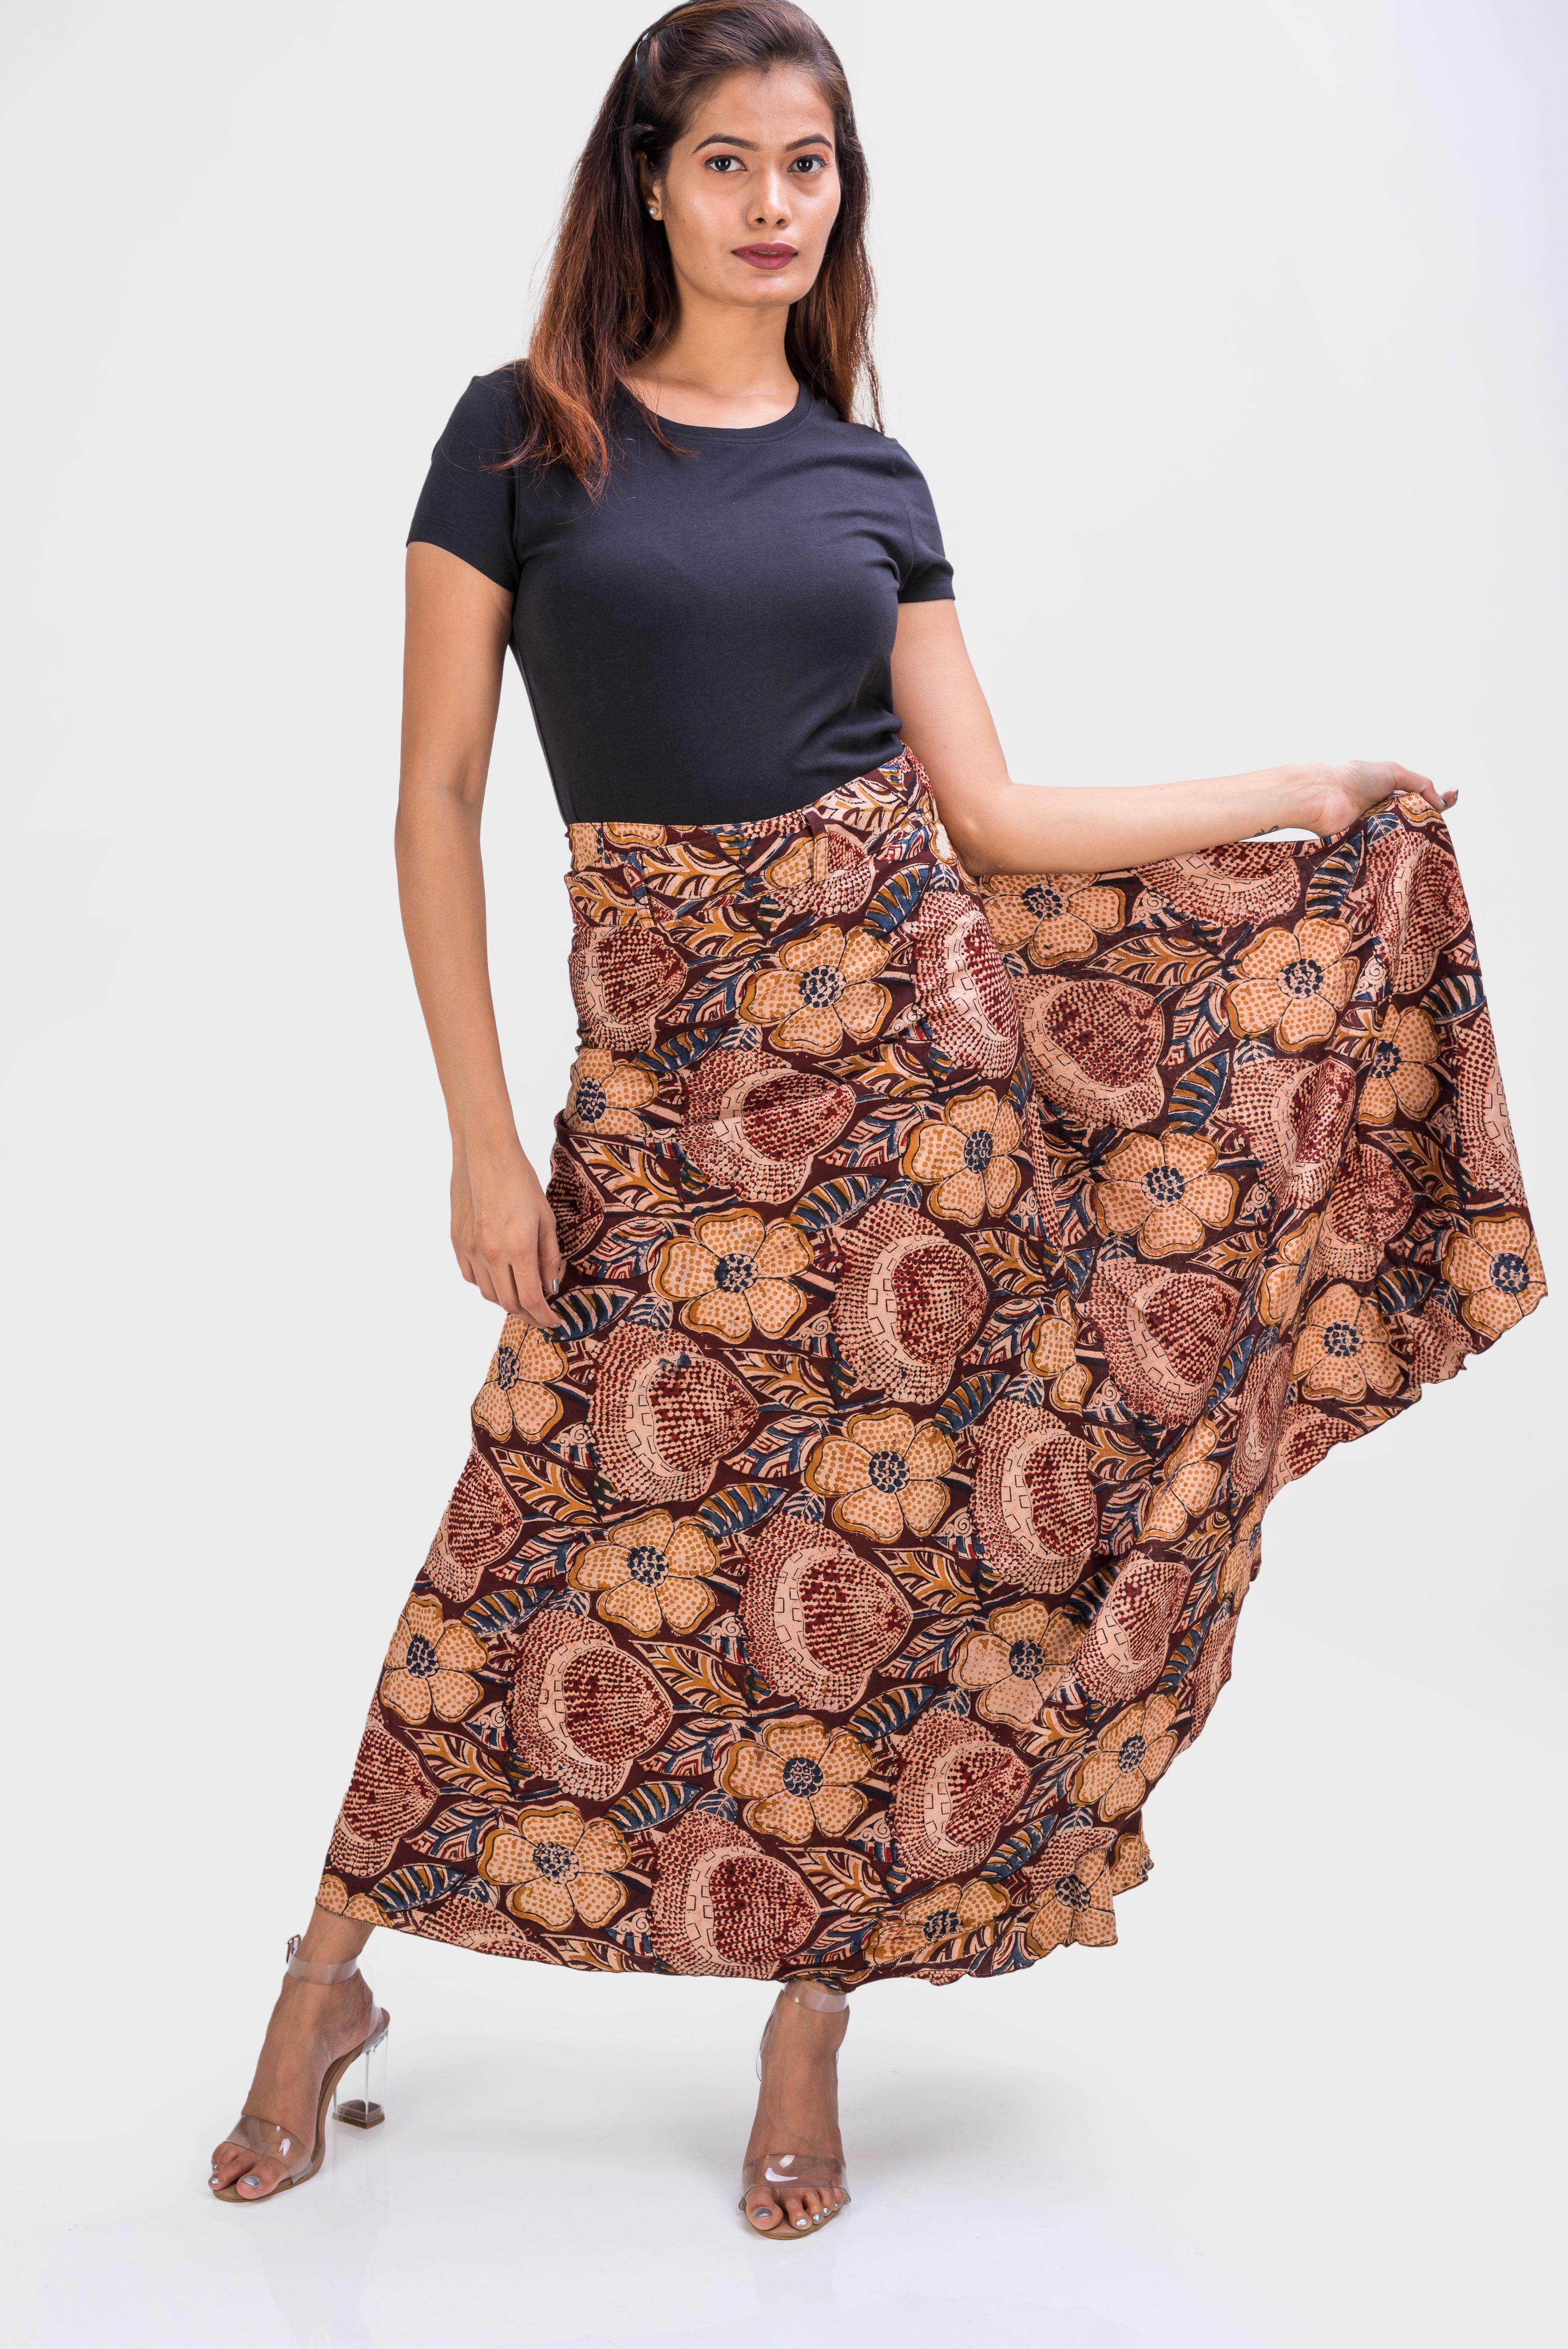 KK3018 "Wrap Skirt" - Brown Flowers